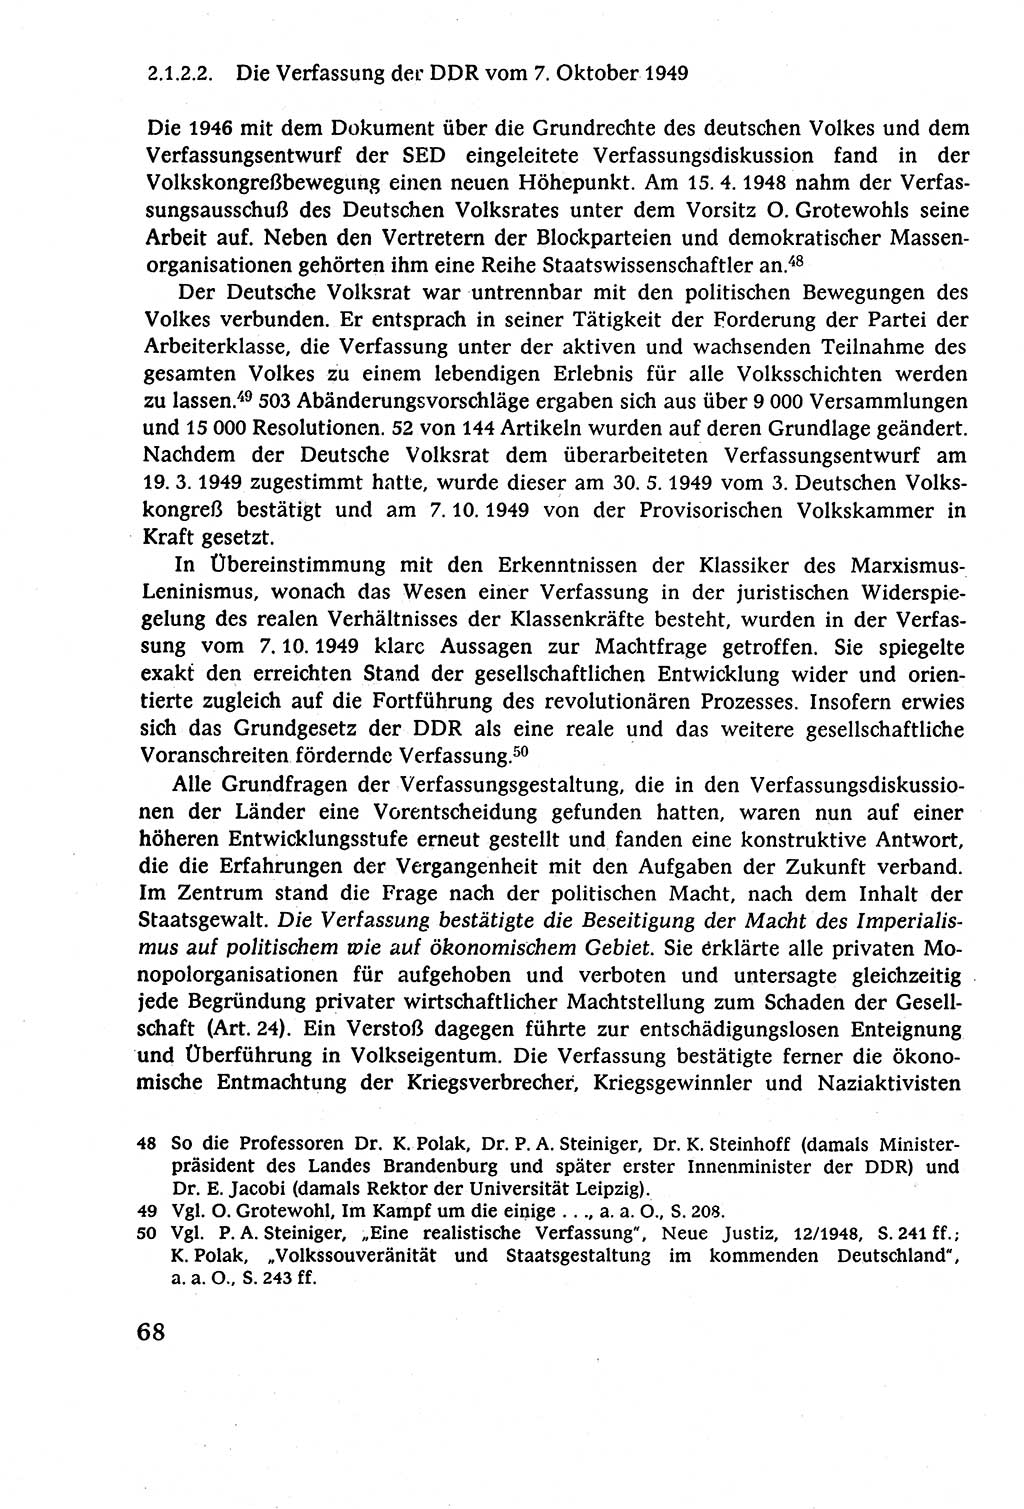 Staatsrecht der DDR (Deutsche Demokratische Republik), Lehrbuch 1977, Seite 68 (St.-R. DDR Lb. 1977, S. 68)